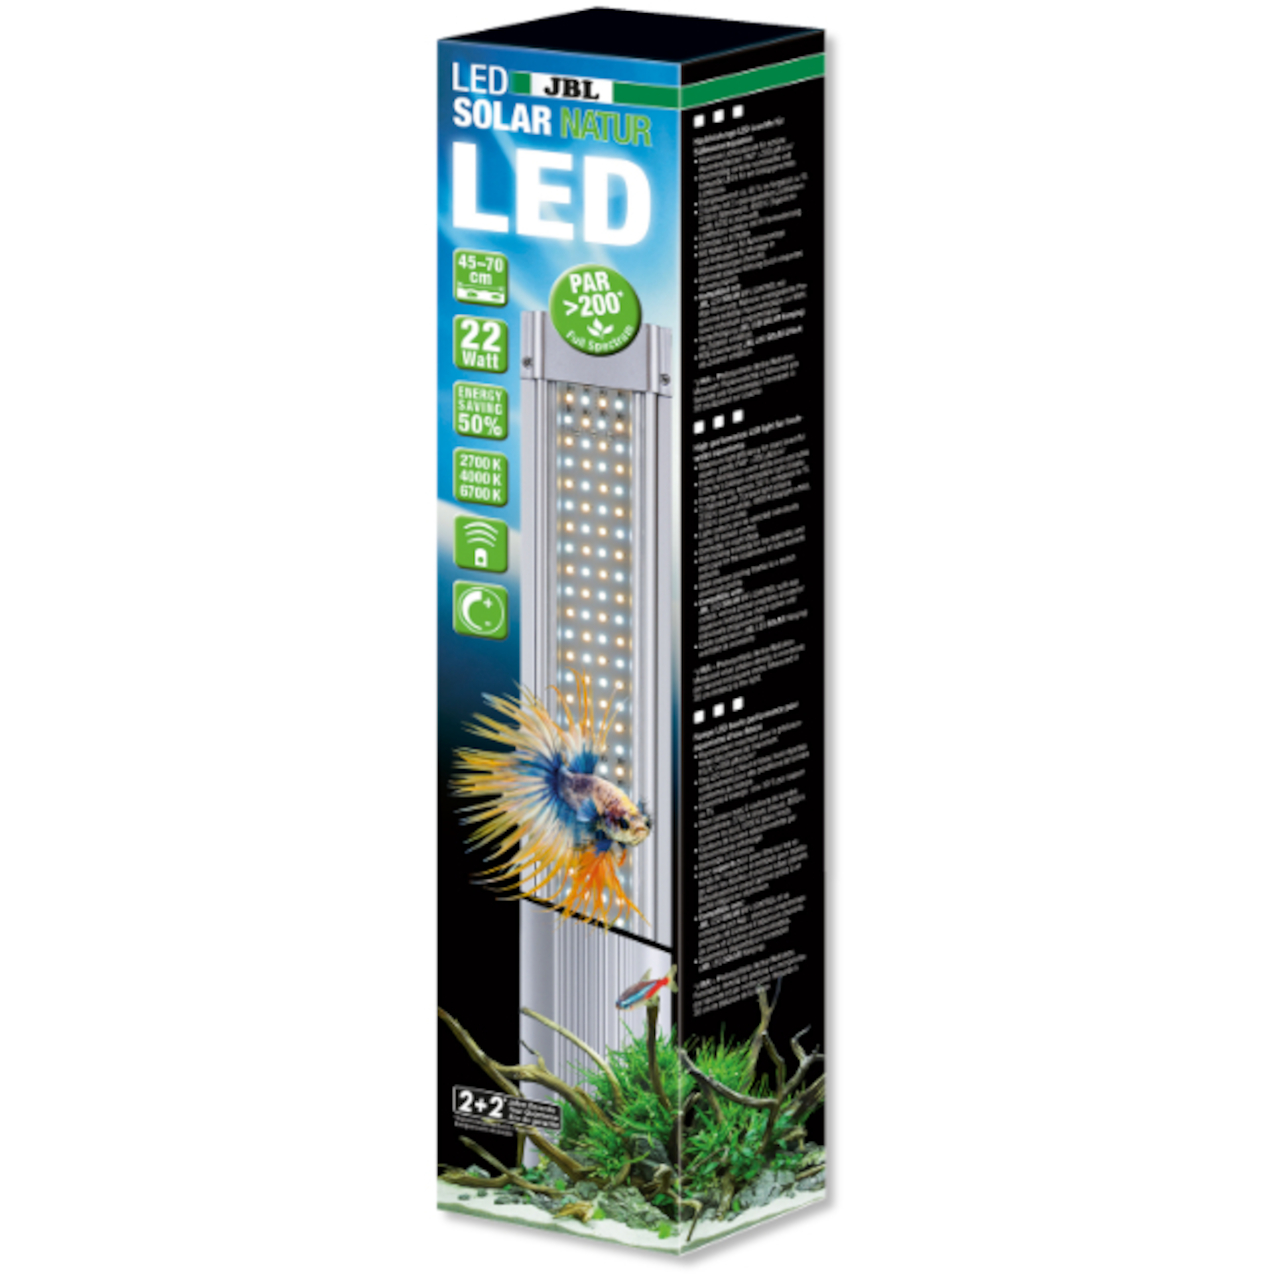 JBL LED Solar Natur 37 Watt